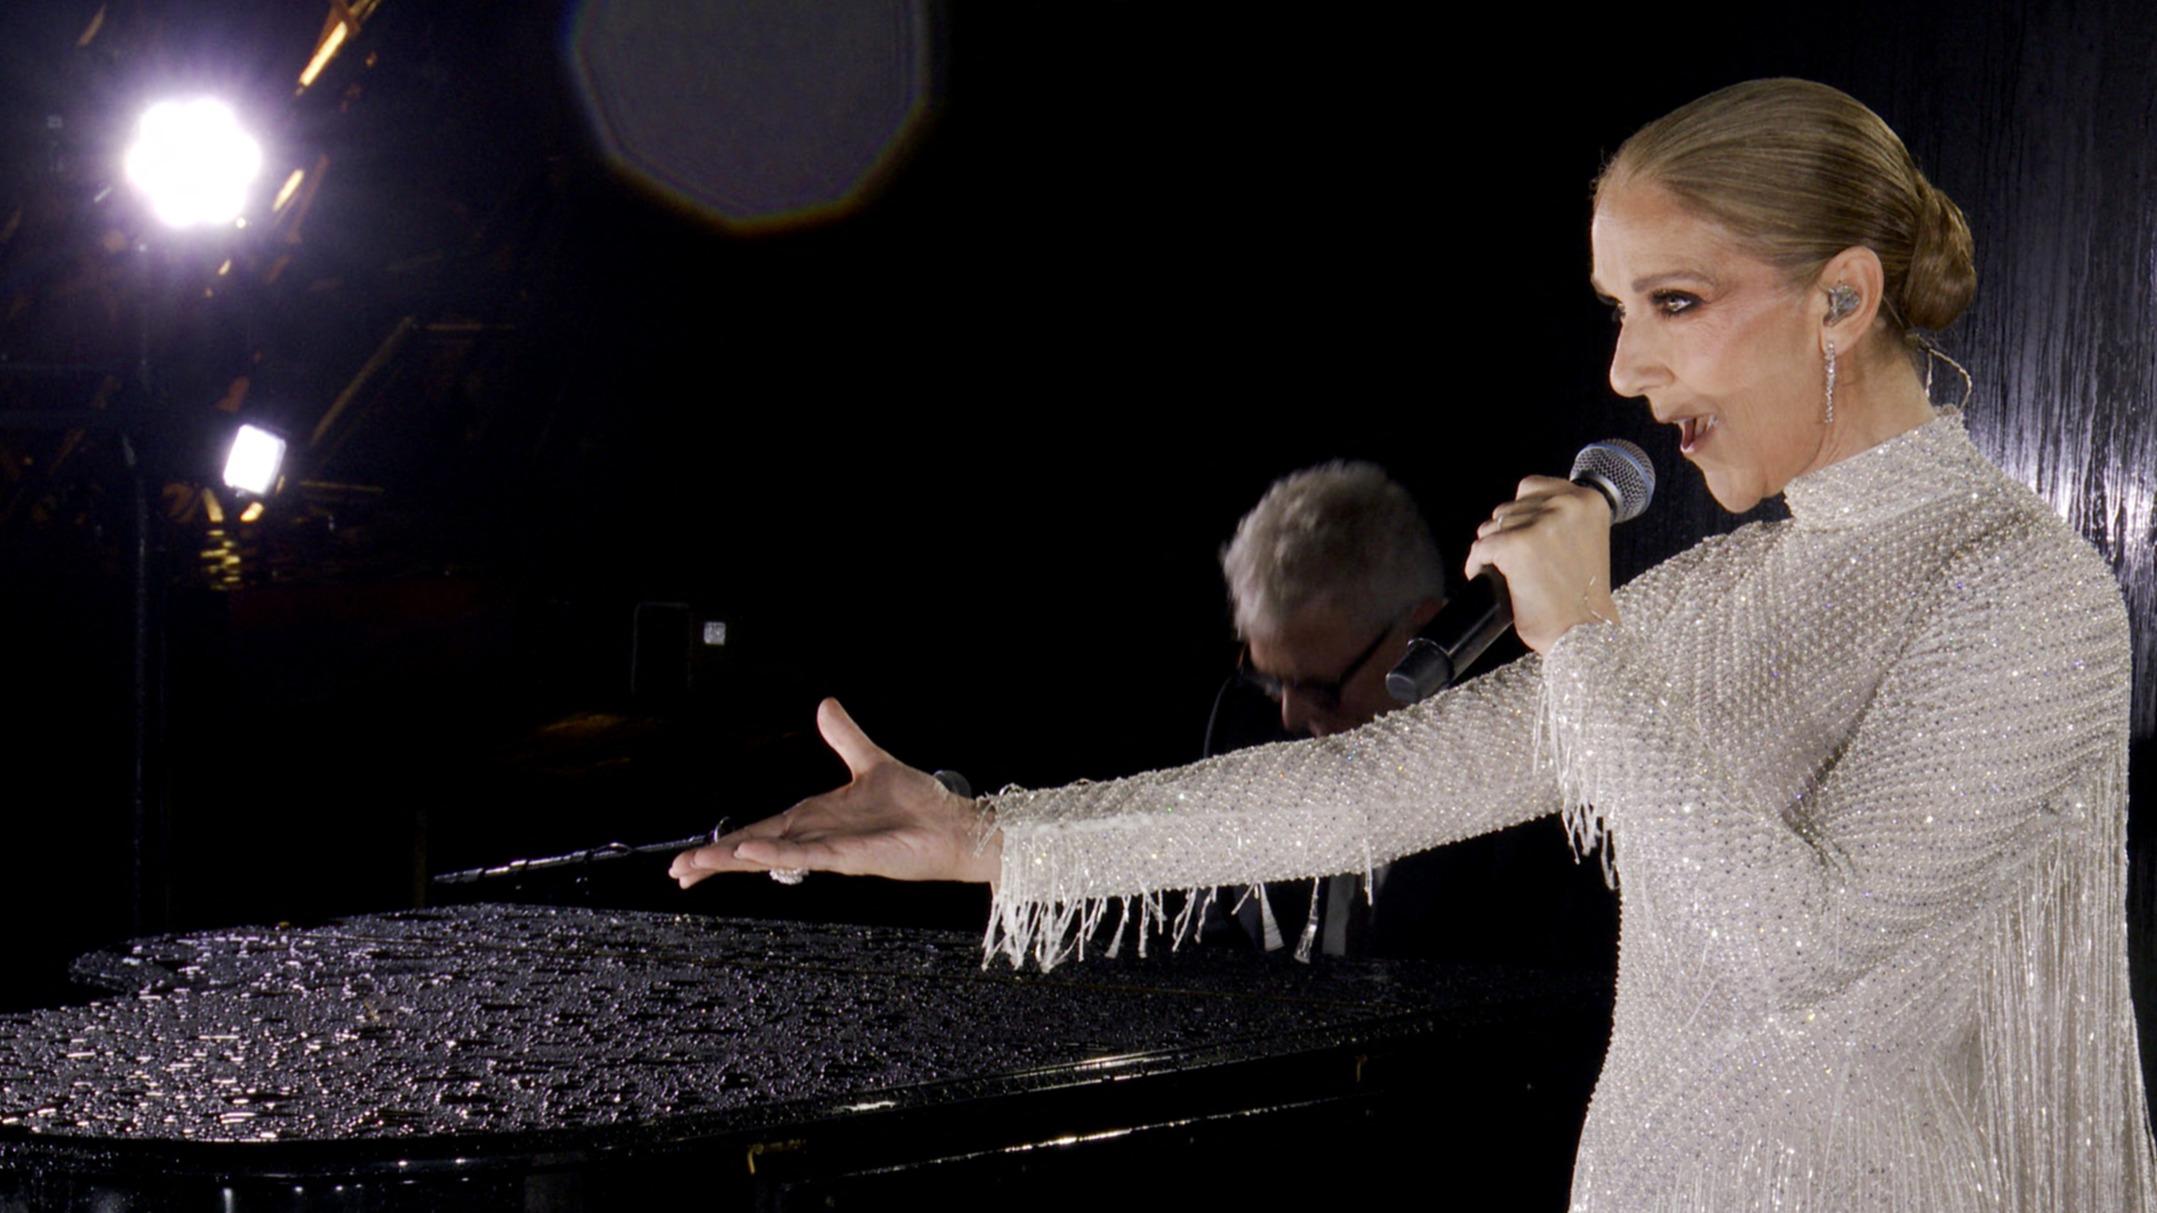 Accompagnée par son pianiste Scott Price, dans une longue robe argentée, Céline Dion a chanté L’Hymne à l’amour.&amp;nbsp;